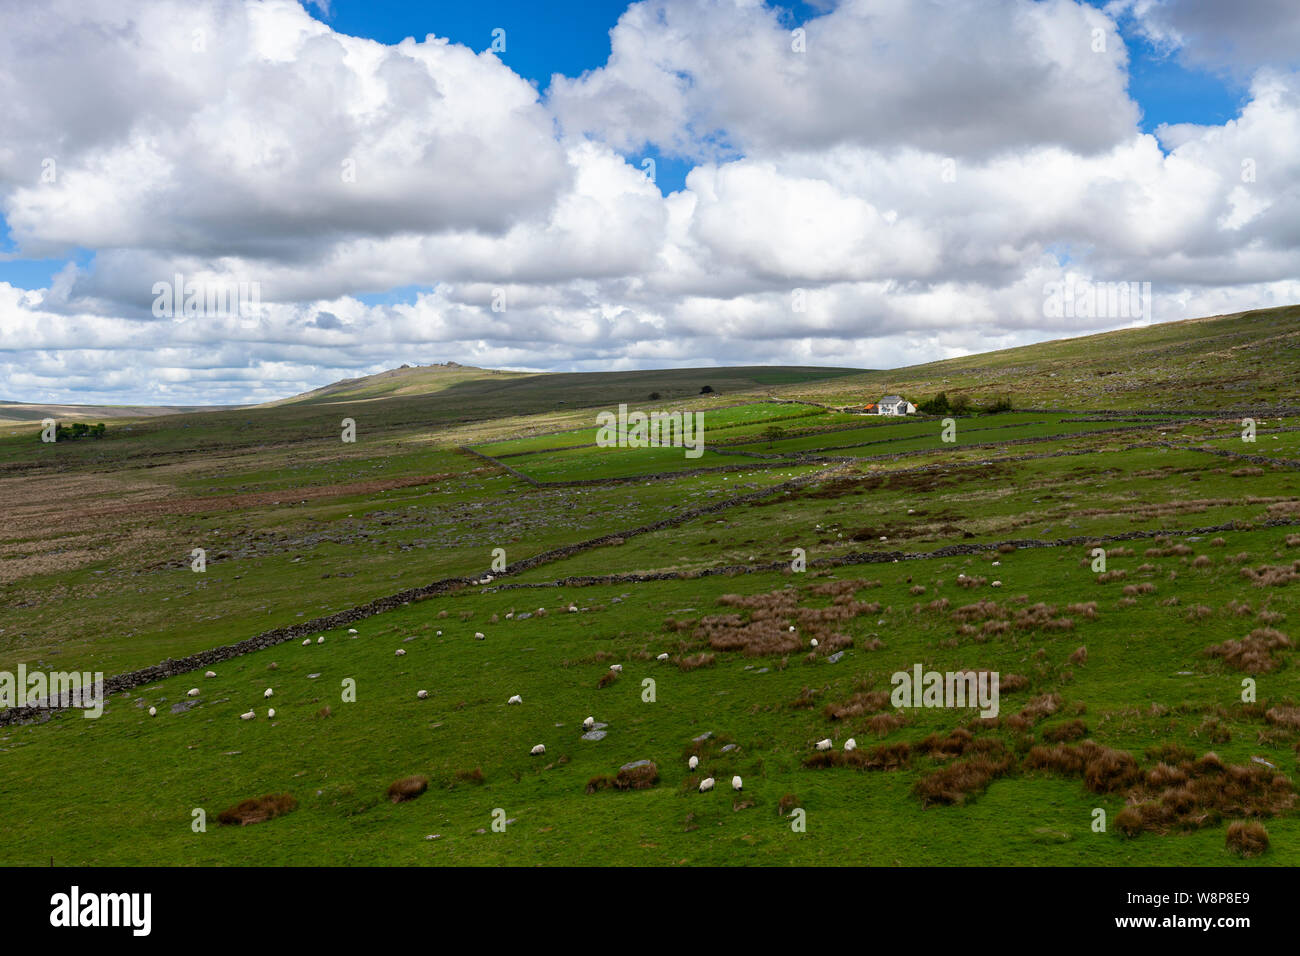 Moutons paissent sur les collines éloignées de Dartmoor National Park, Devon, Angleterre près de Foggintor carrière. Il y a un lointain house entouré par les landes. Banque D'Images